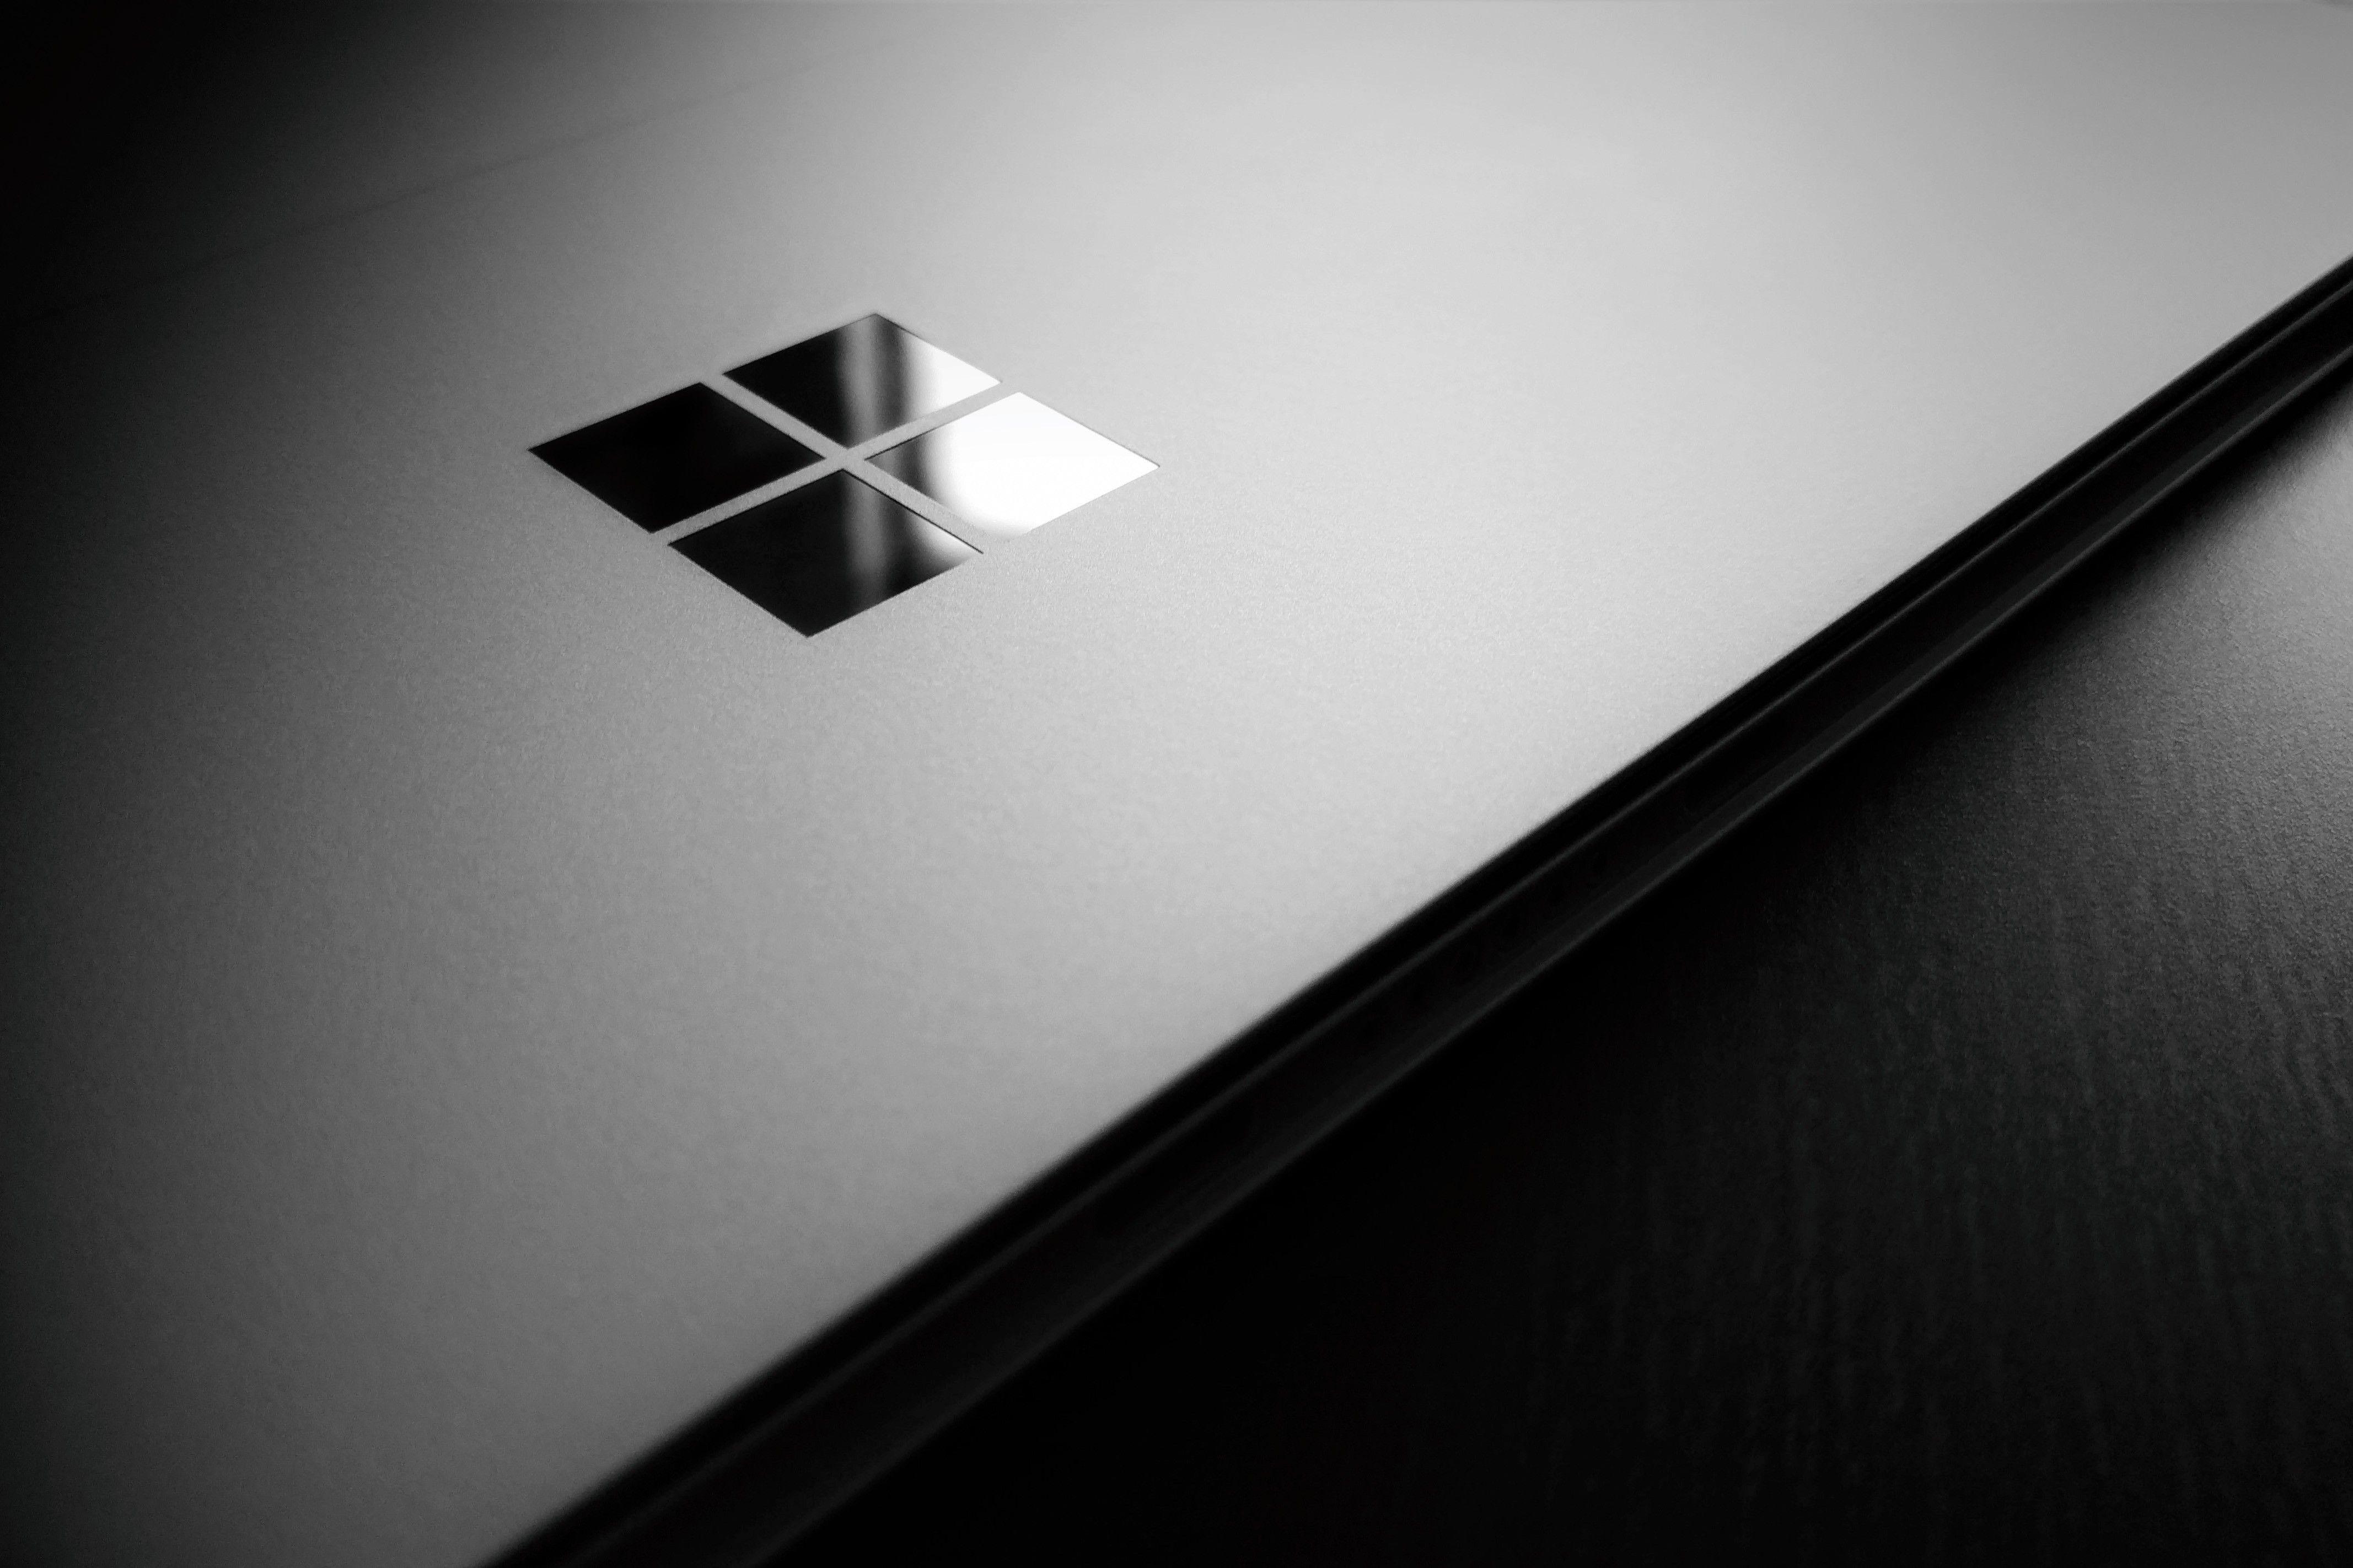 Microsoft Surface Logo - Wallpaper : wooden surface, logo, circle, laptop, Microsoft Windows ...